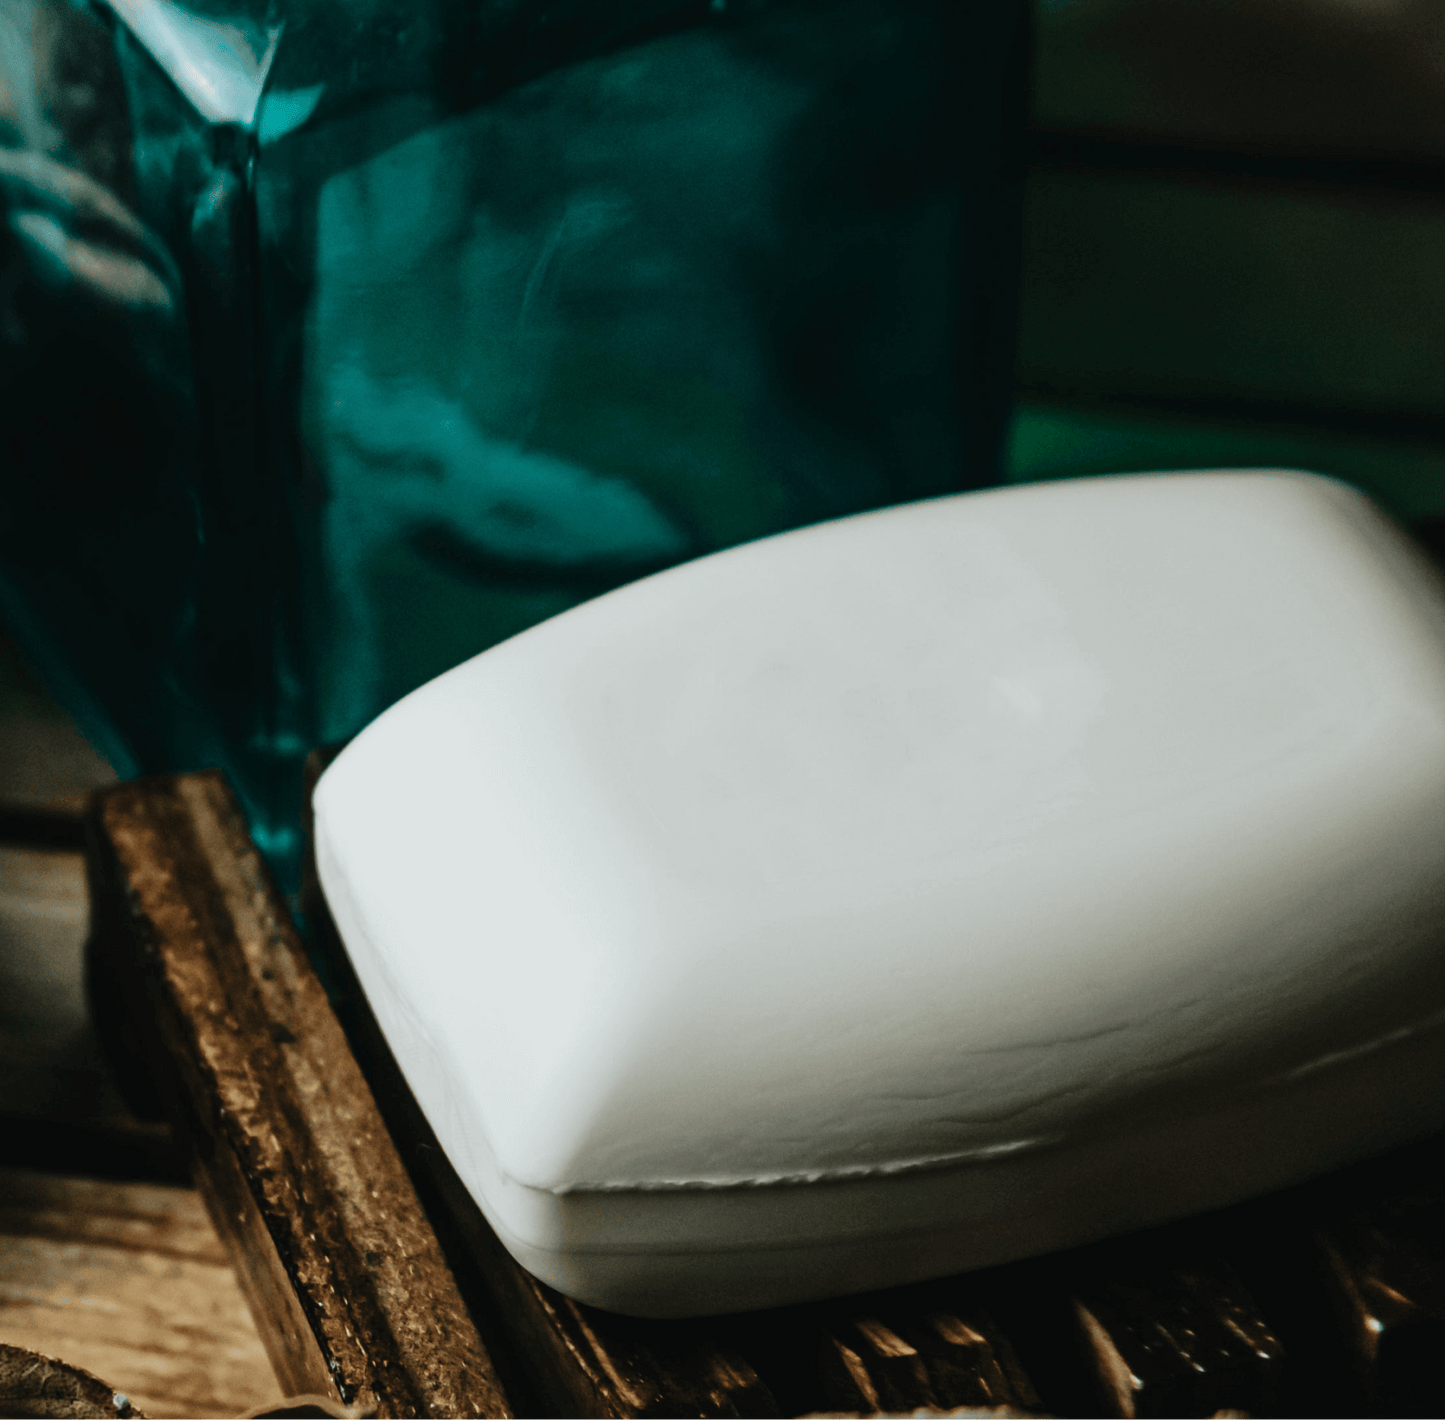 Goat Milk Handmade Soap